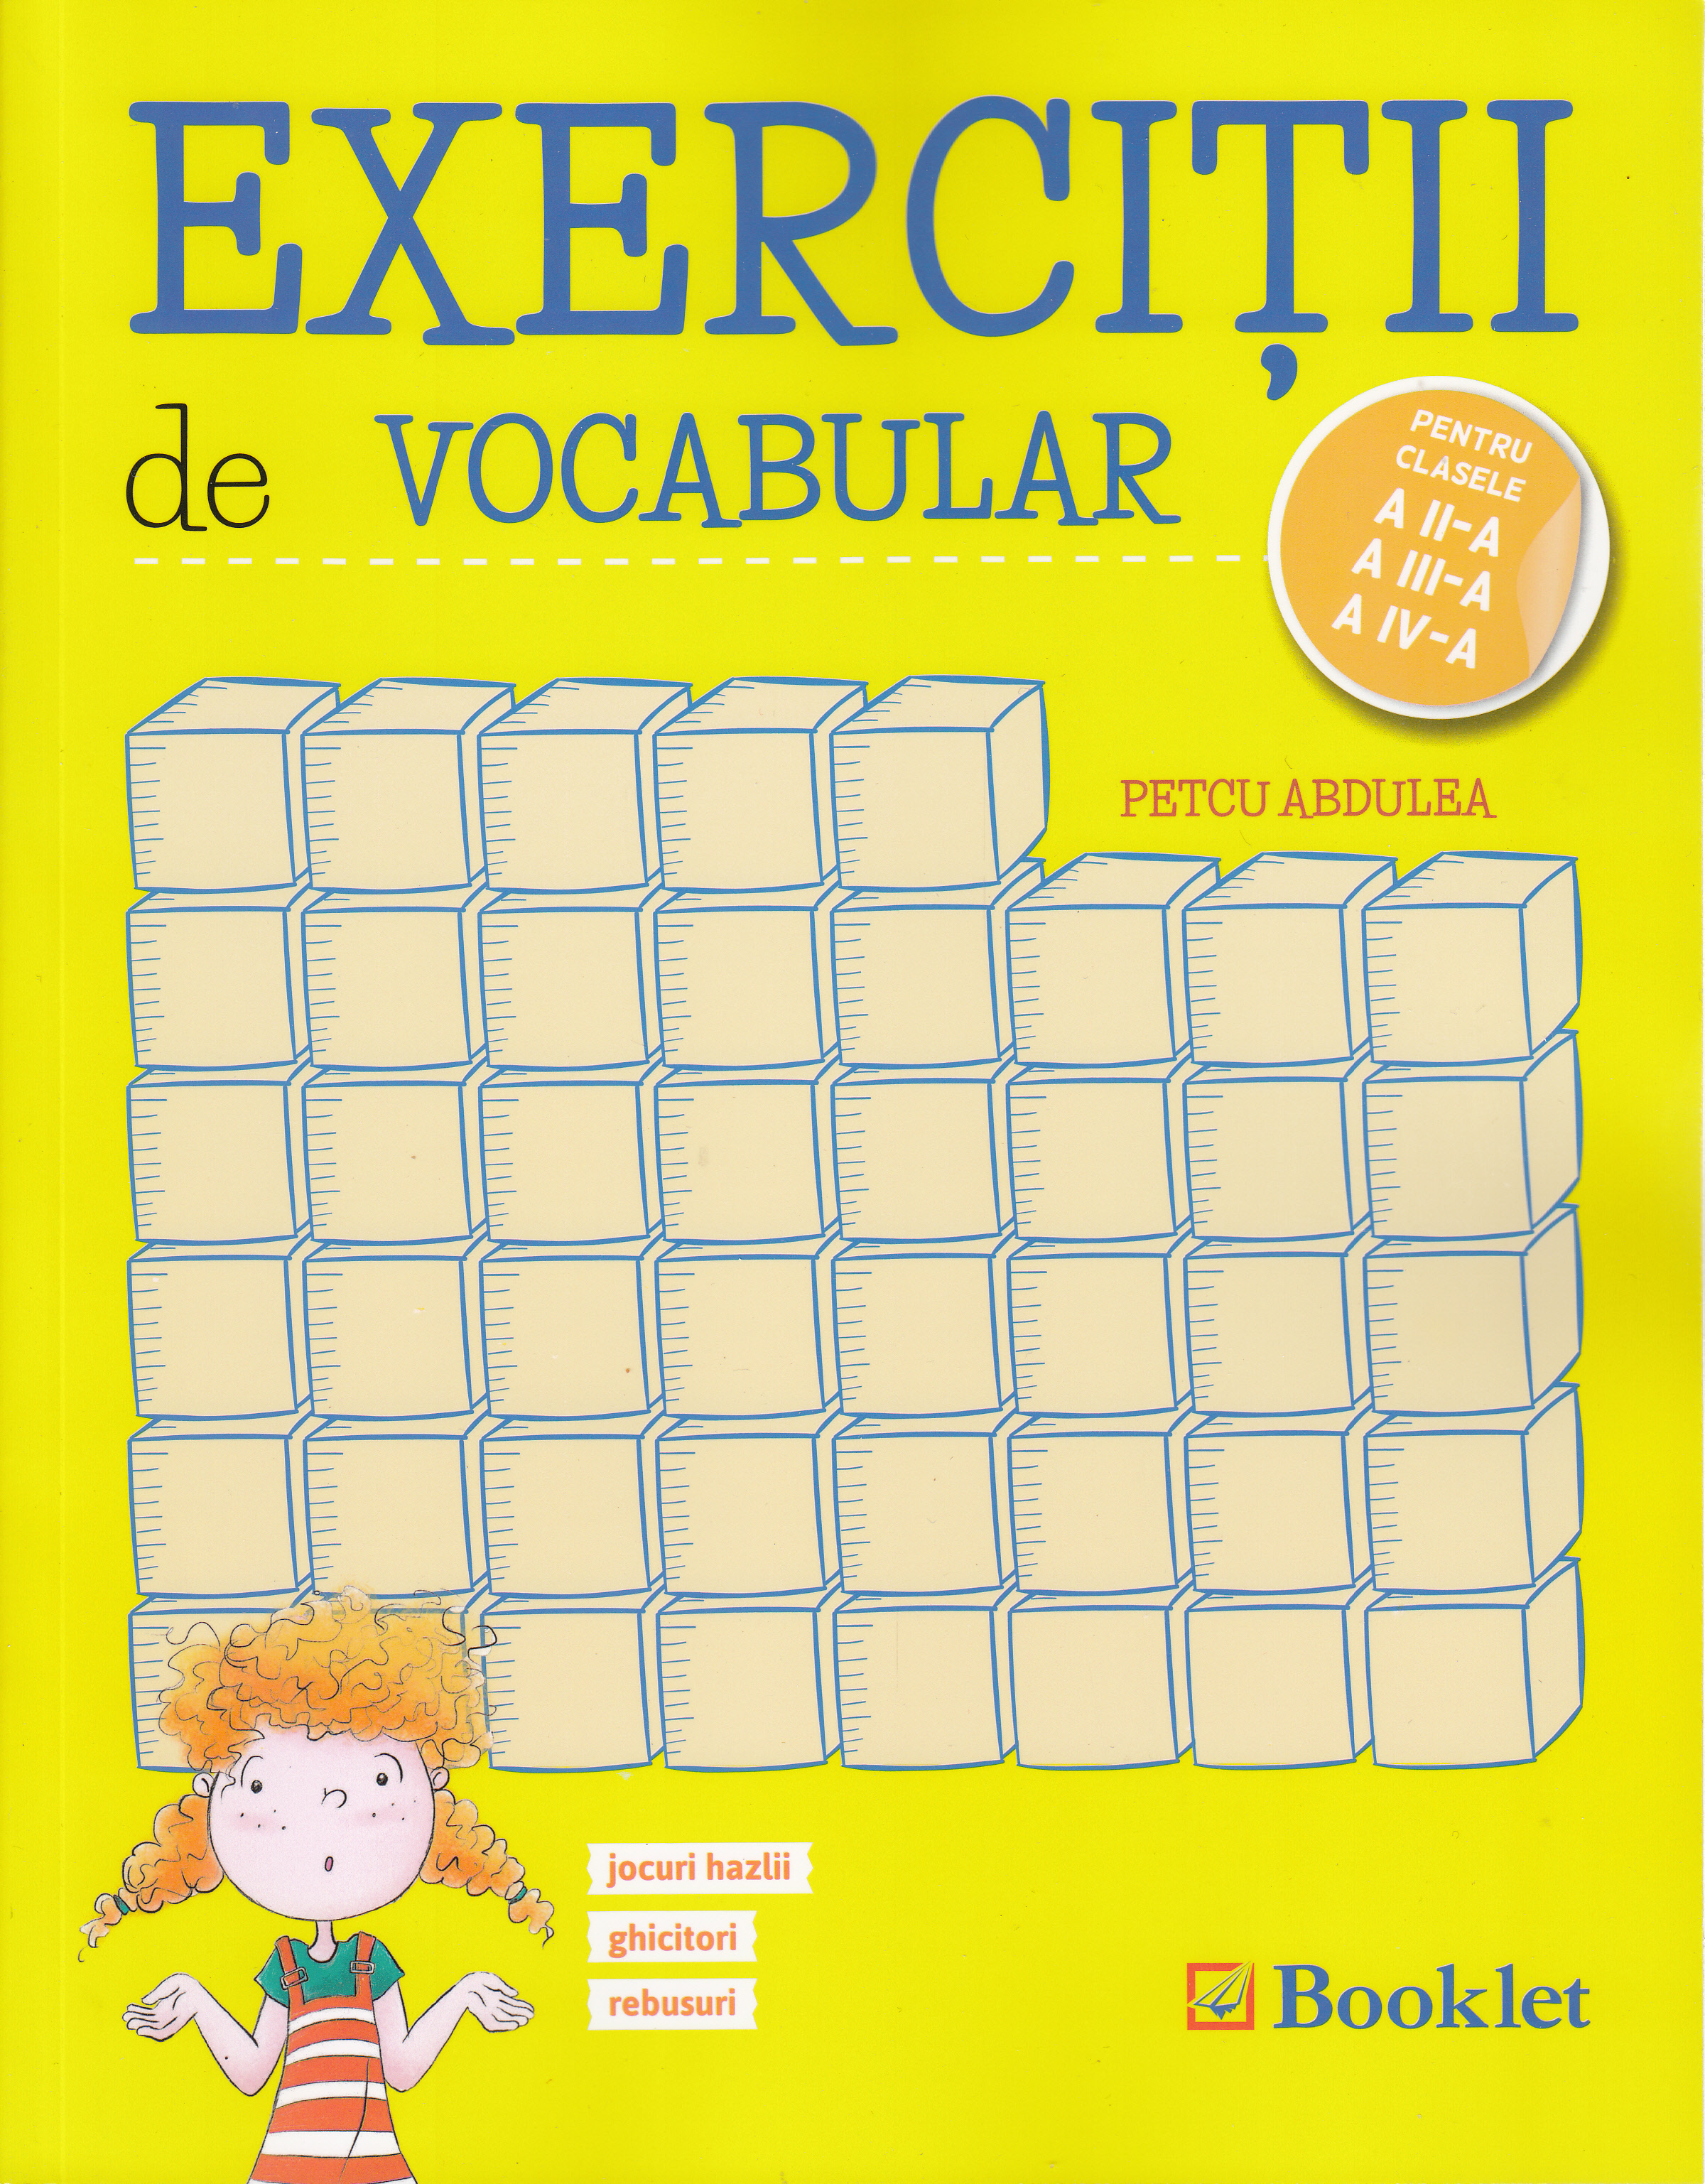 Exercitii de vocabular - Clasele 2, 3, 4 - Petcu Abdulea